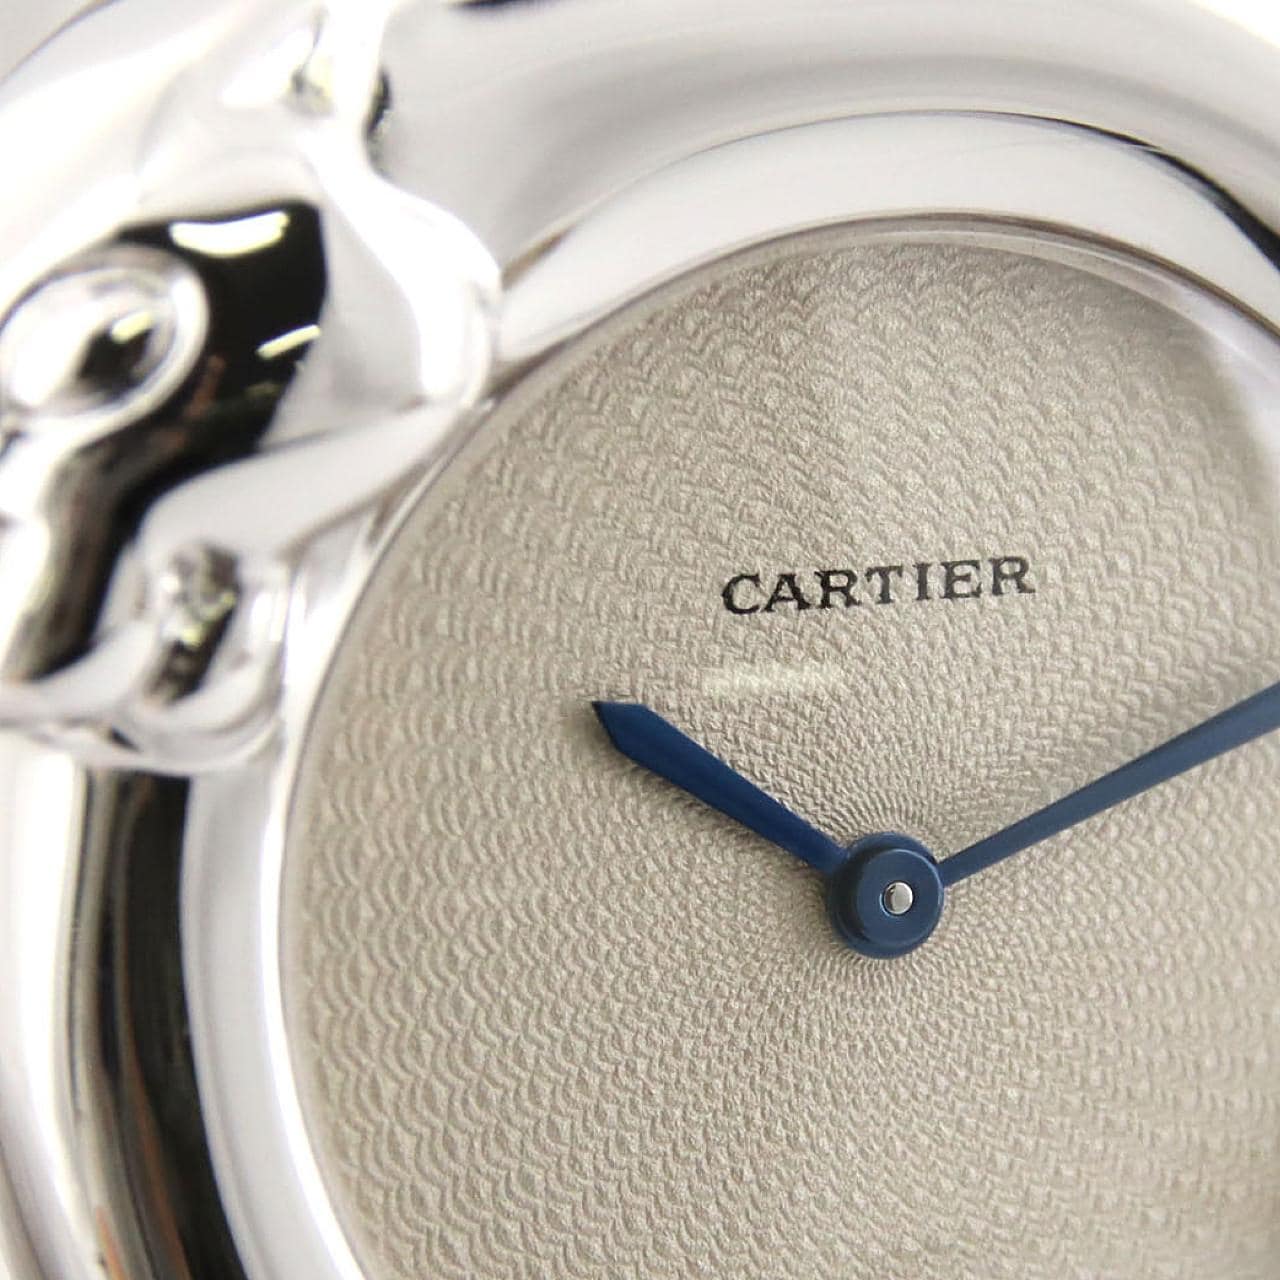 Cartier Panthère 1925 WG W25057R5 WG石英